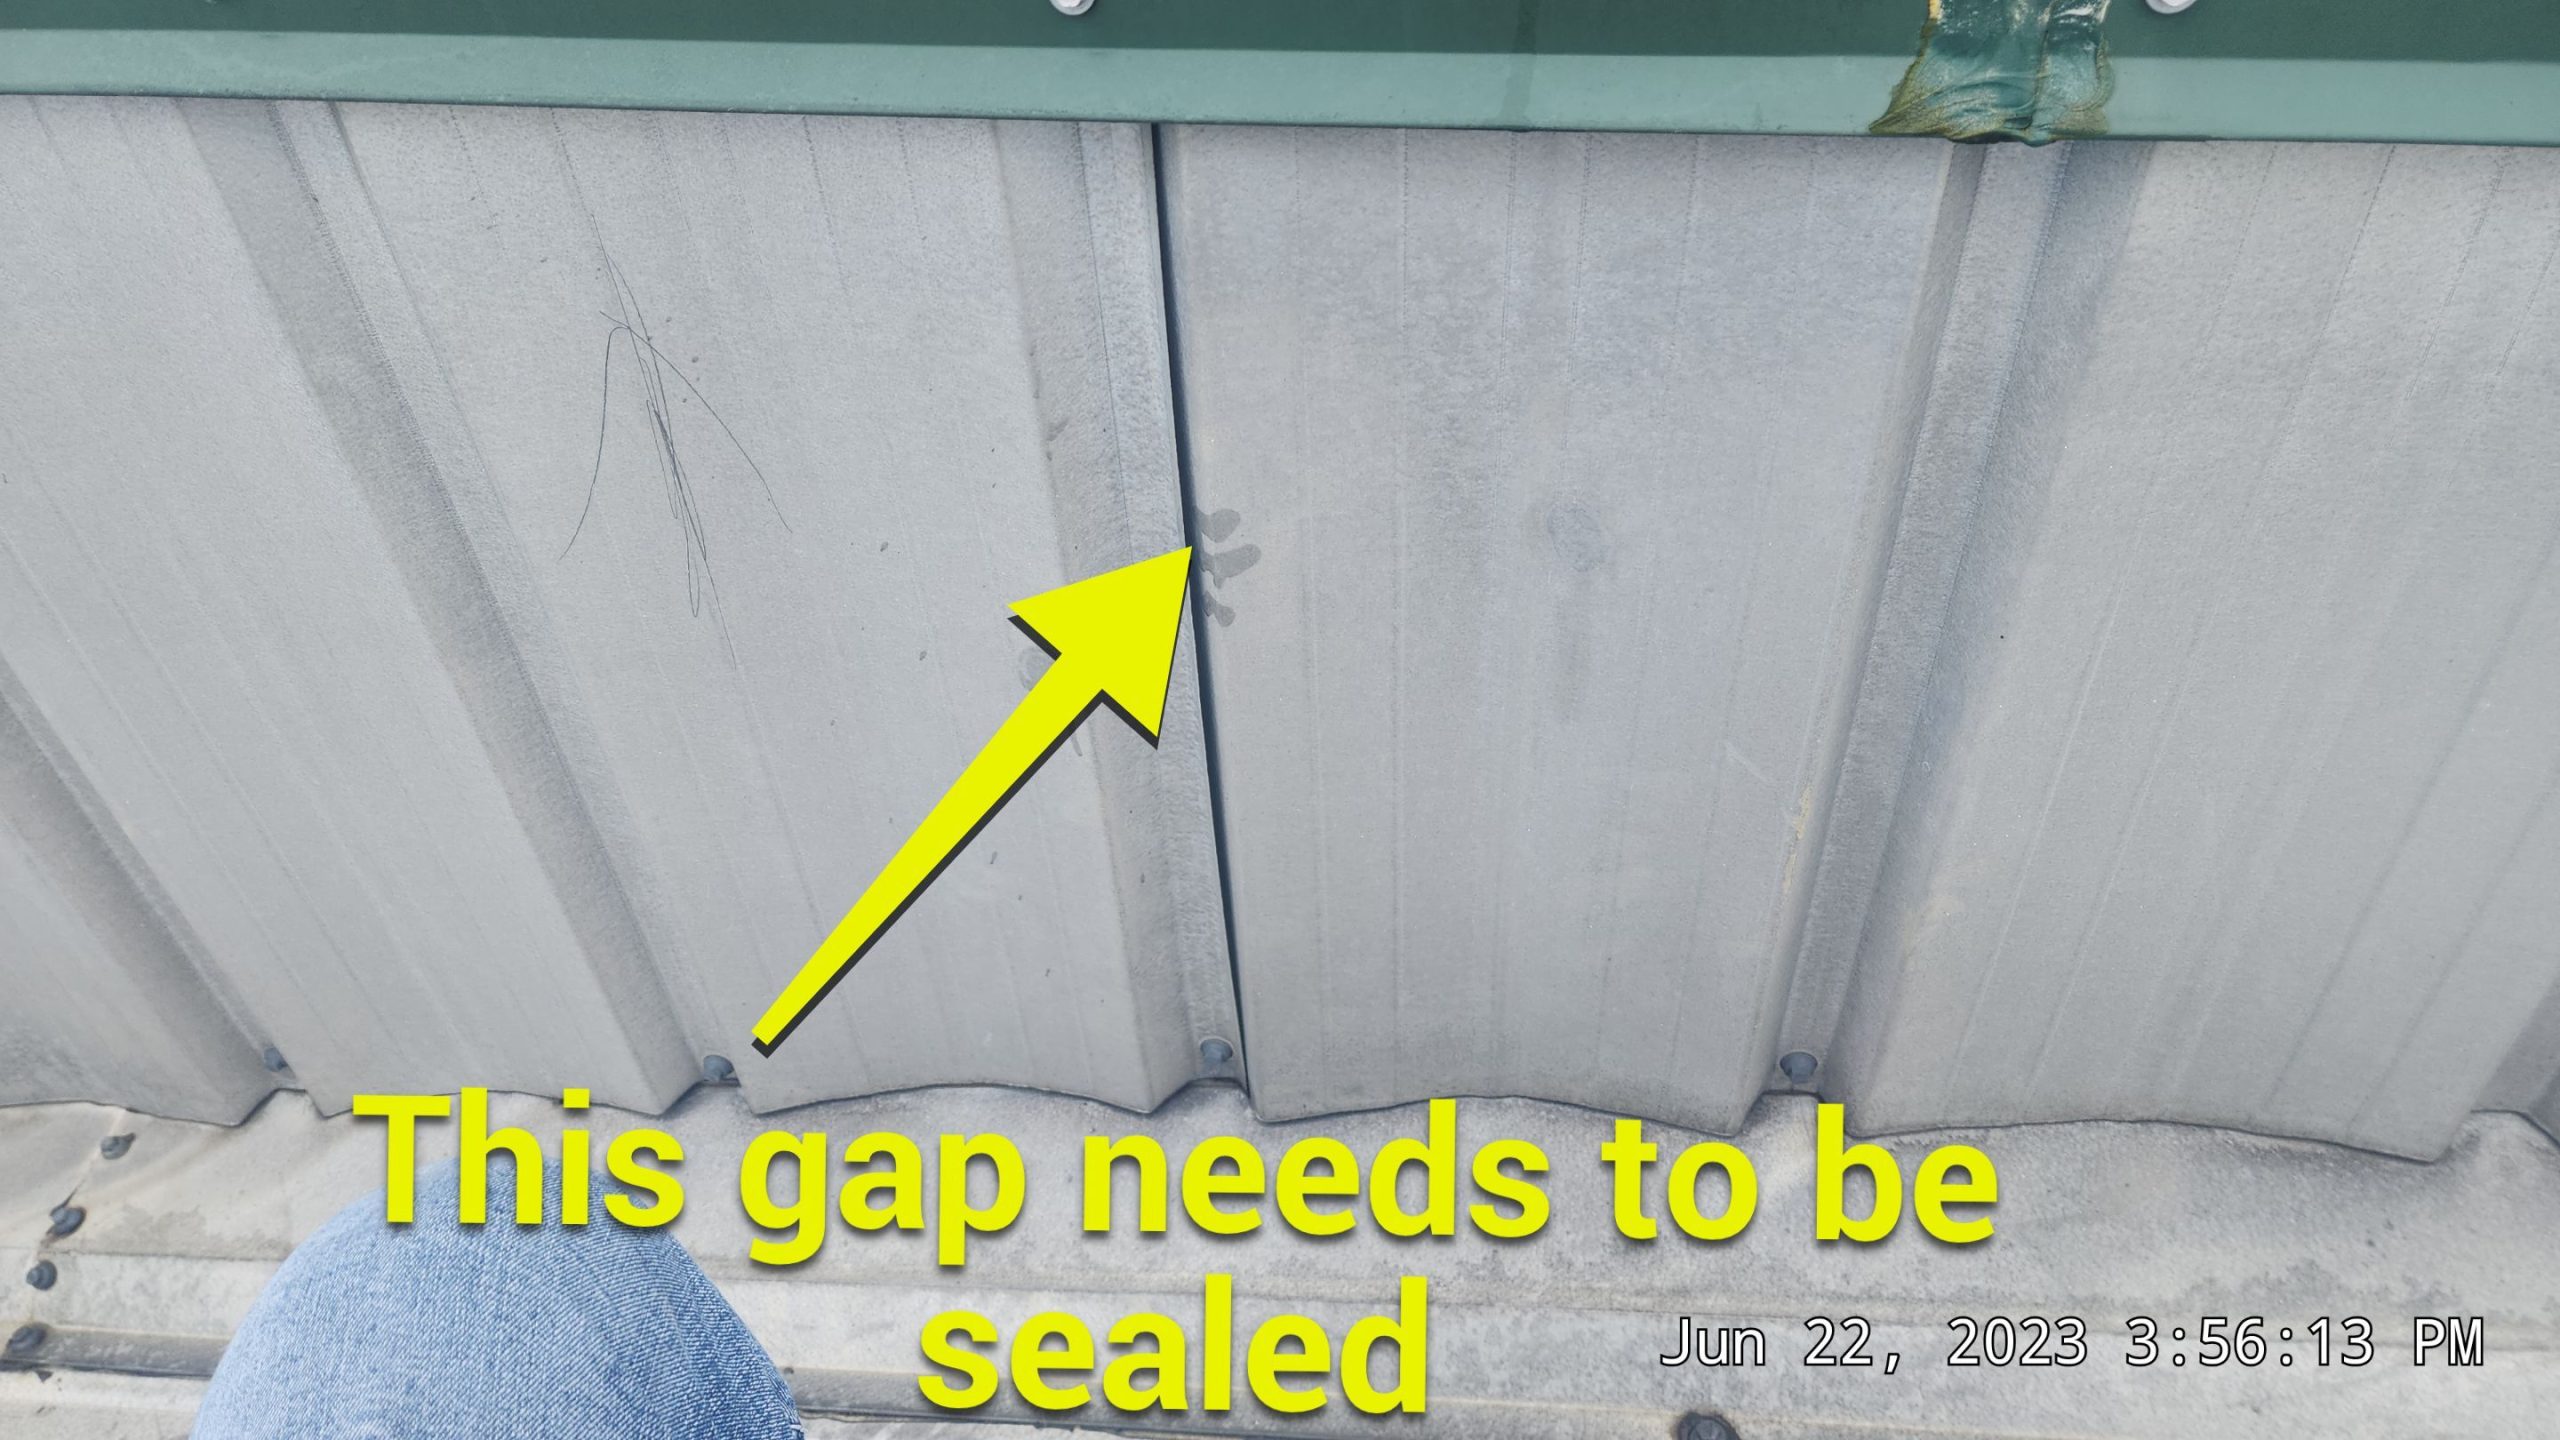 Open gap